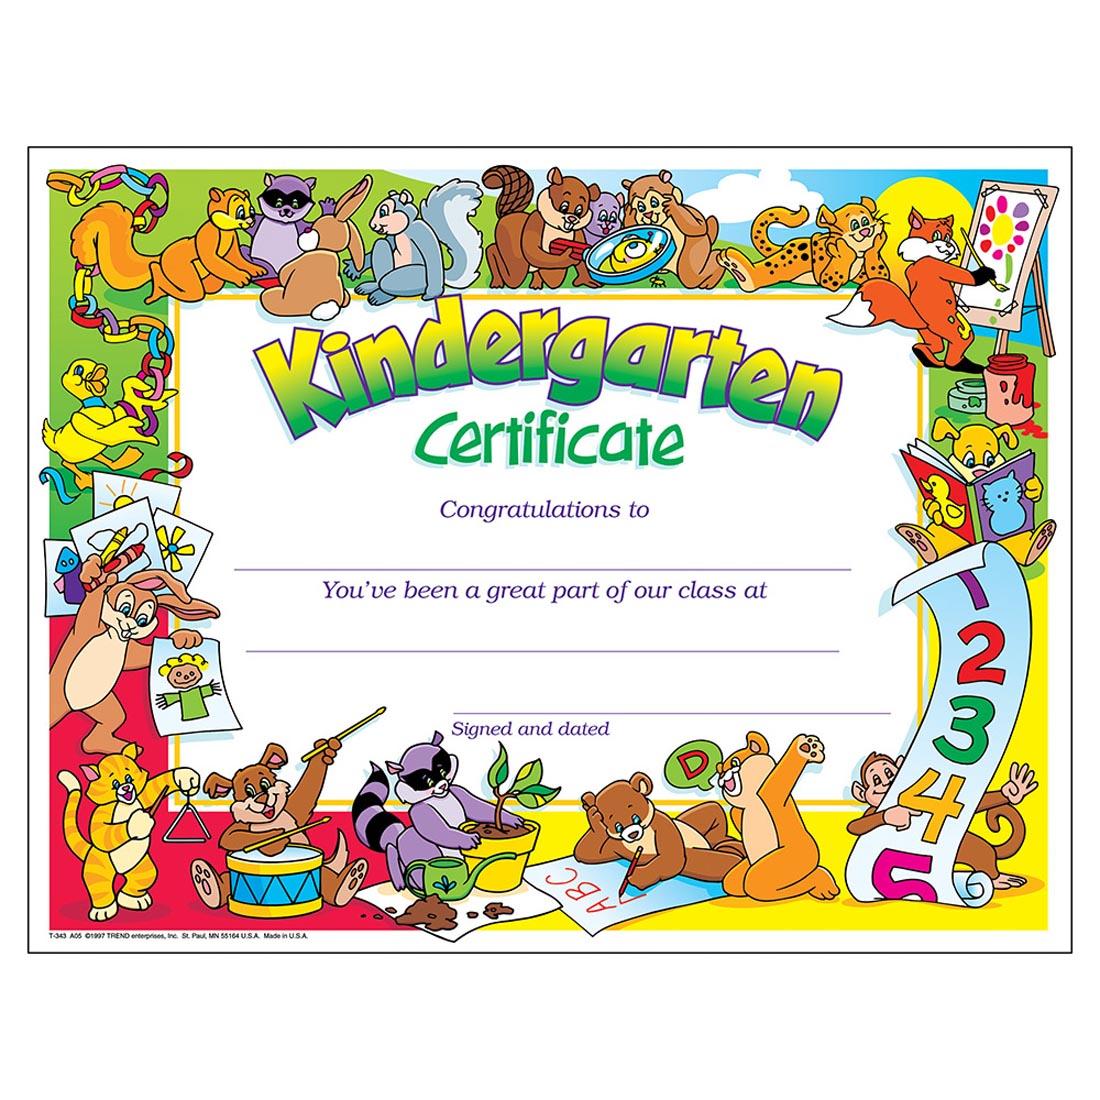 TREND Kindergarten Certificate